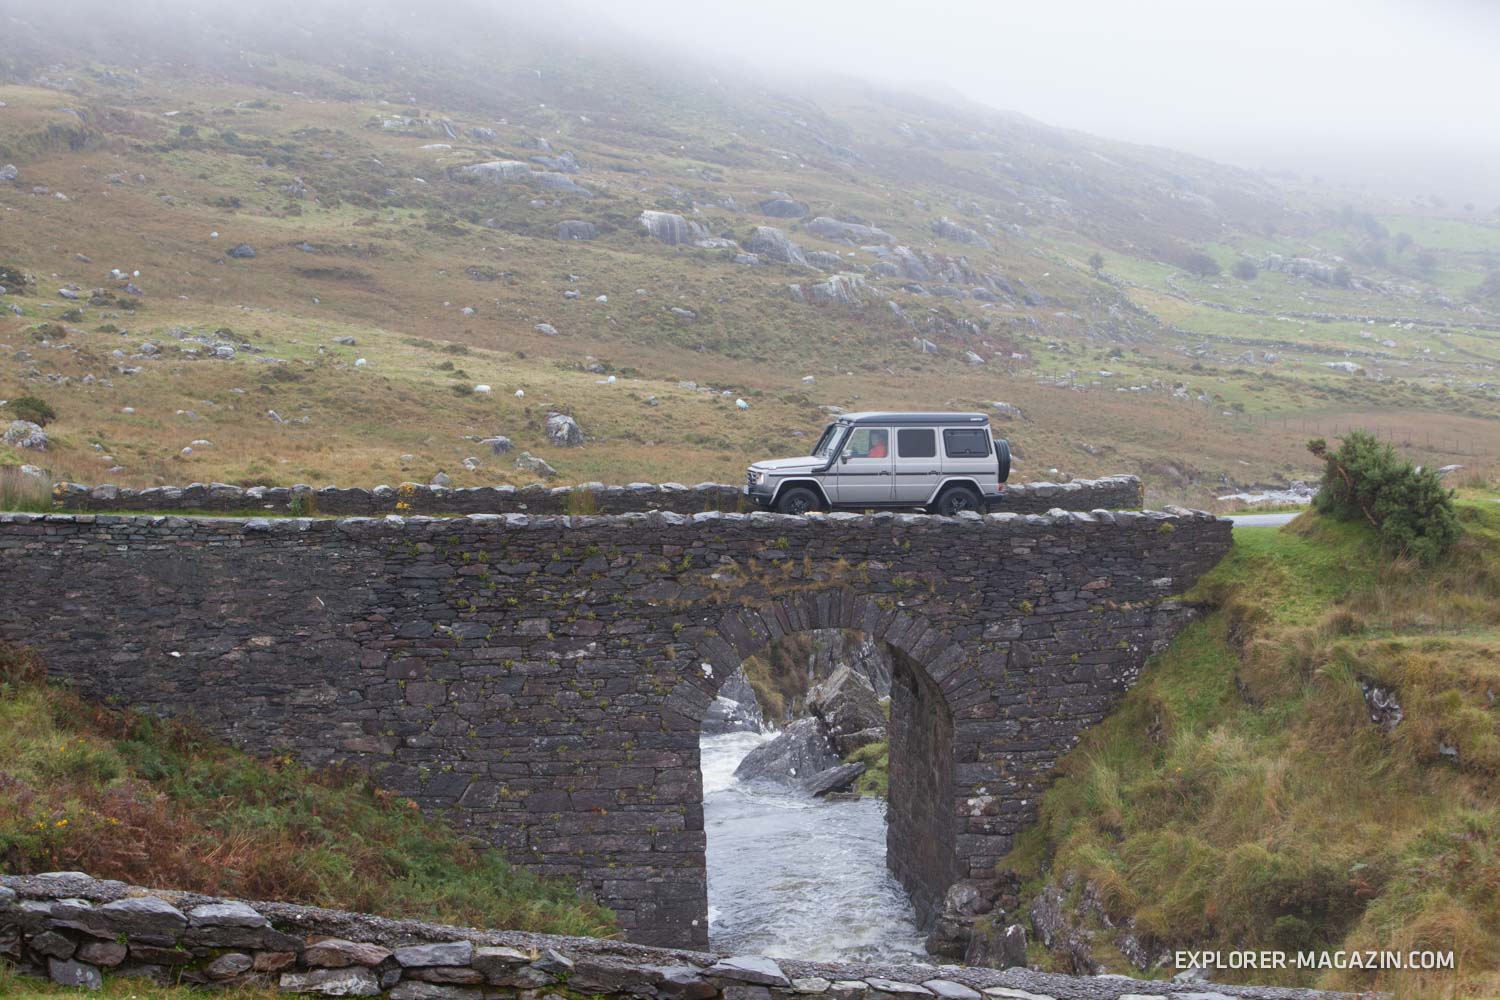 Irland im Geländewagen entdecken